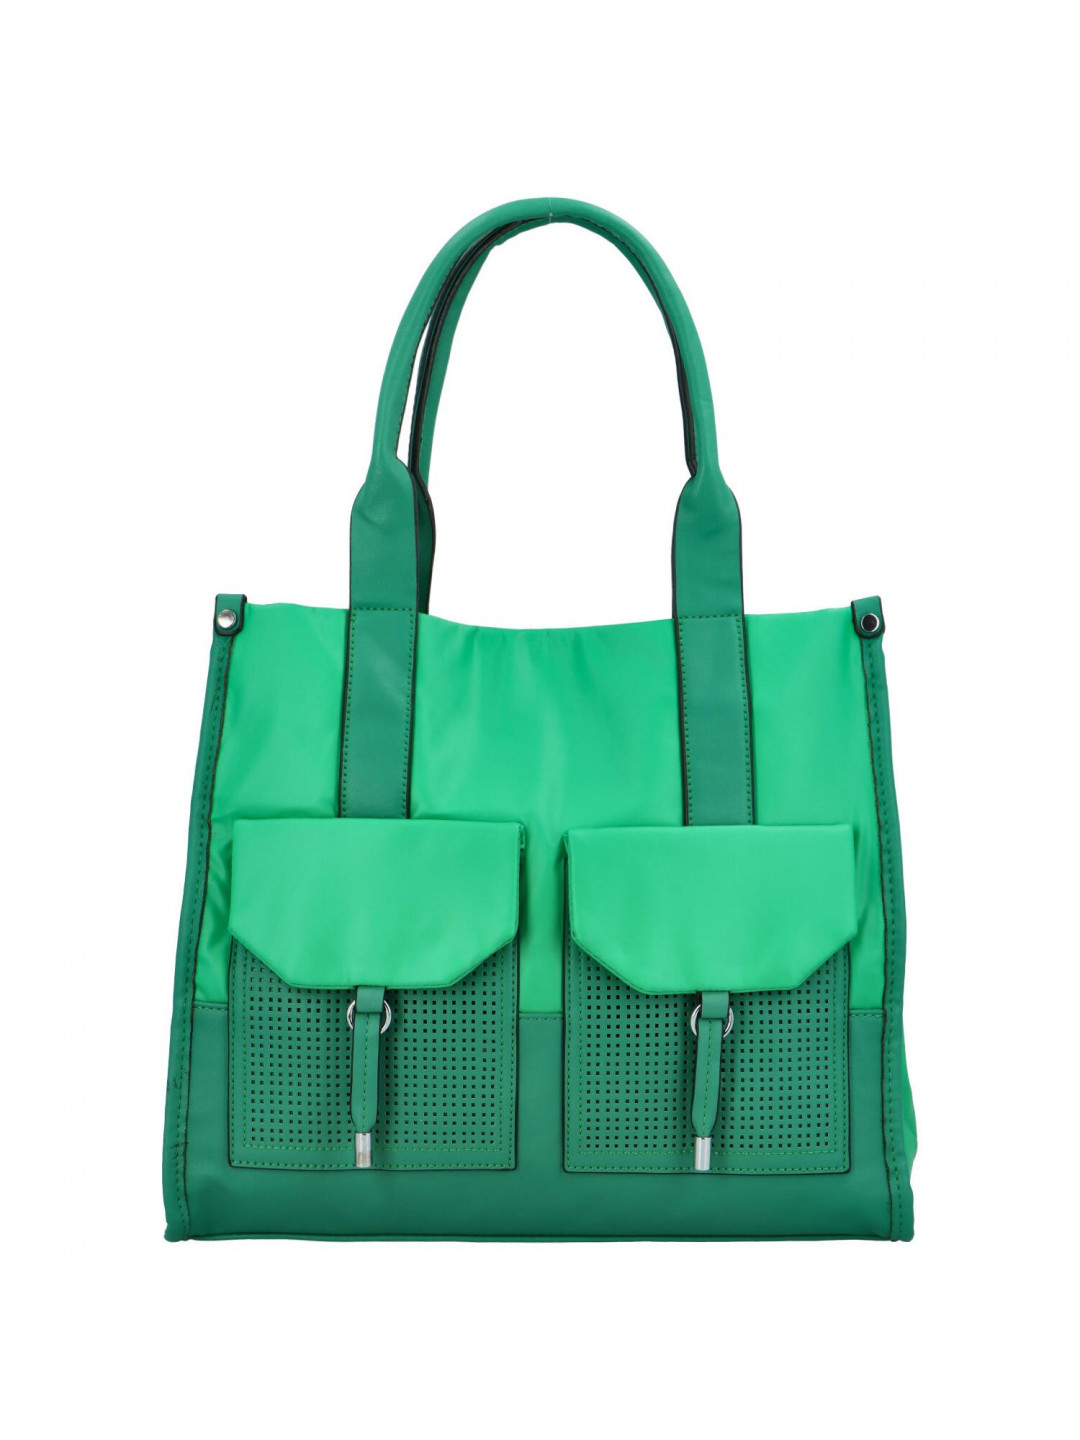 Dámská kabelka přes rameno zelená – Maria C Fosseia